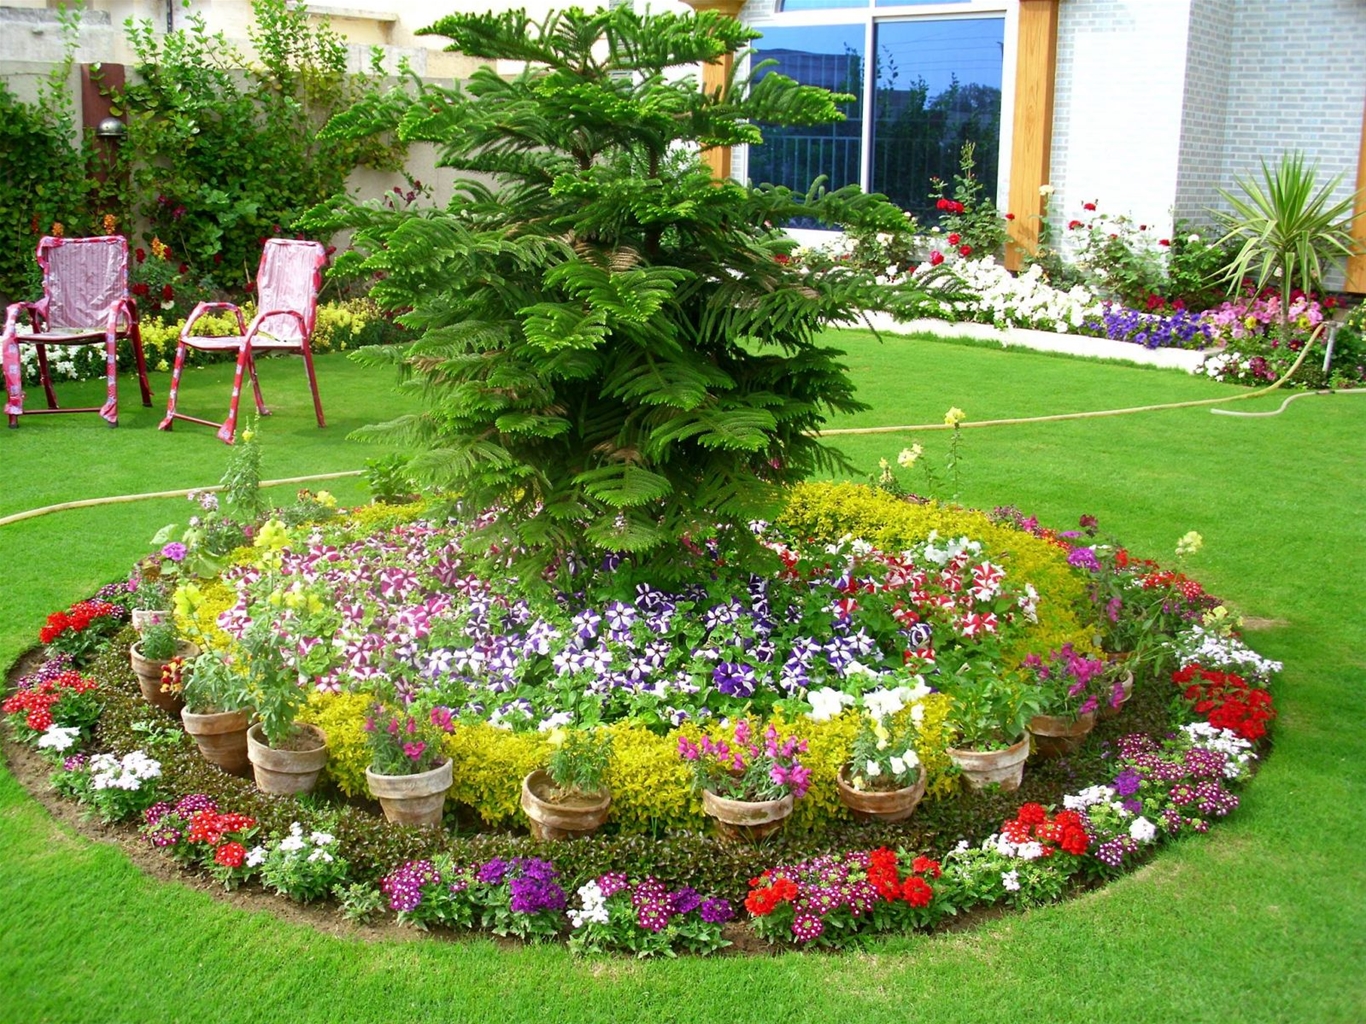 Nguyên tắc khi trang trí sân vườn ấn tượng